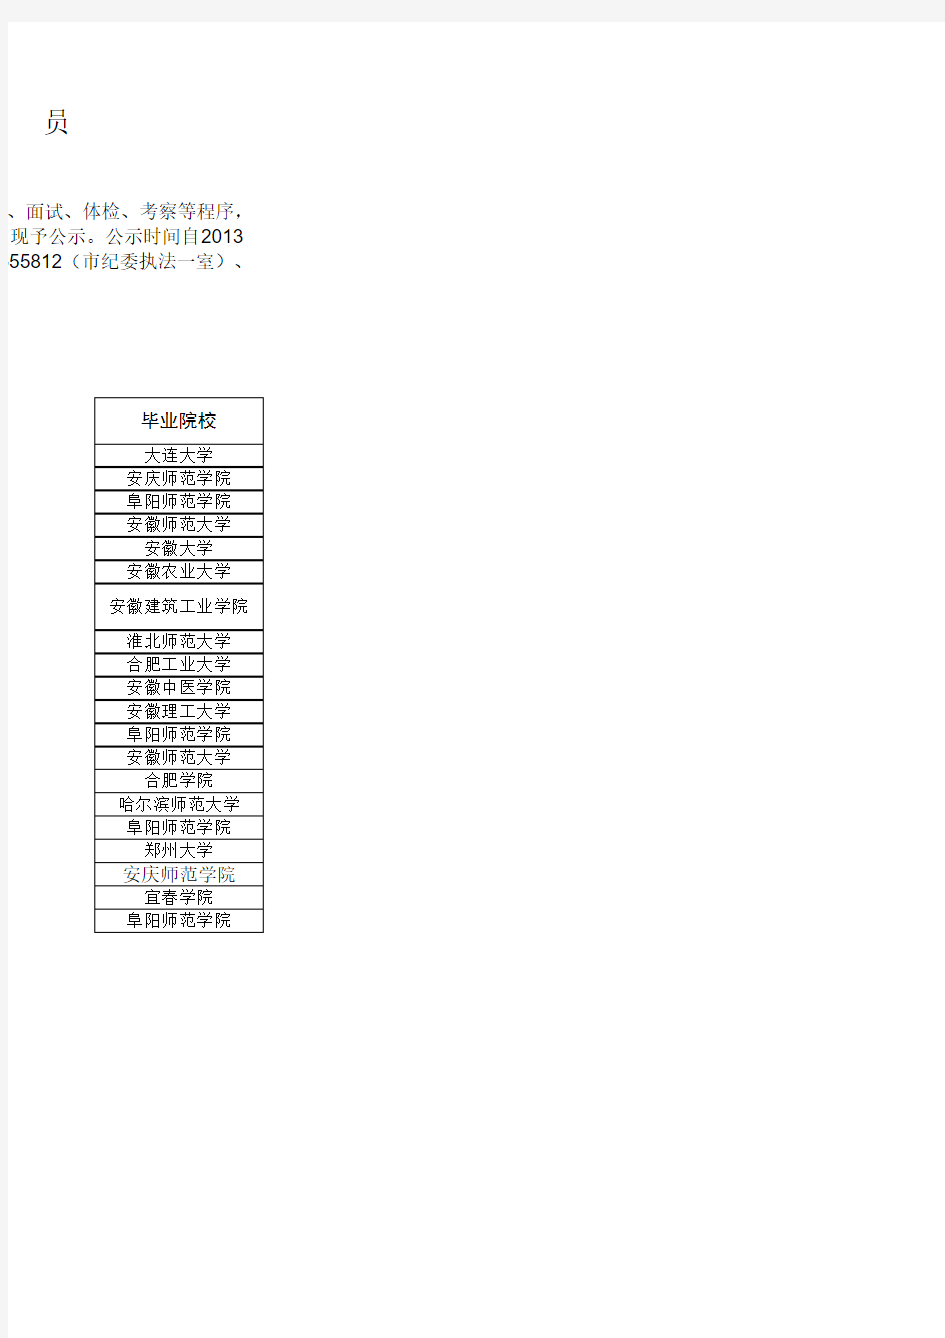 亳州市2013年市直事业单位公开招聘人员第二批拟聘用人员名单公示